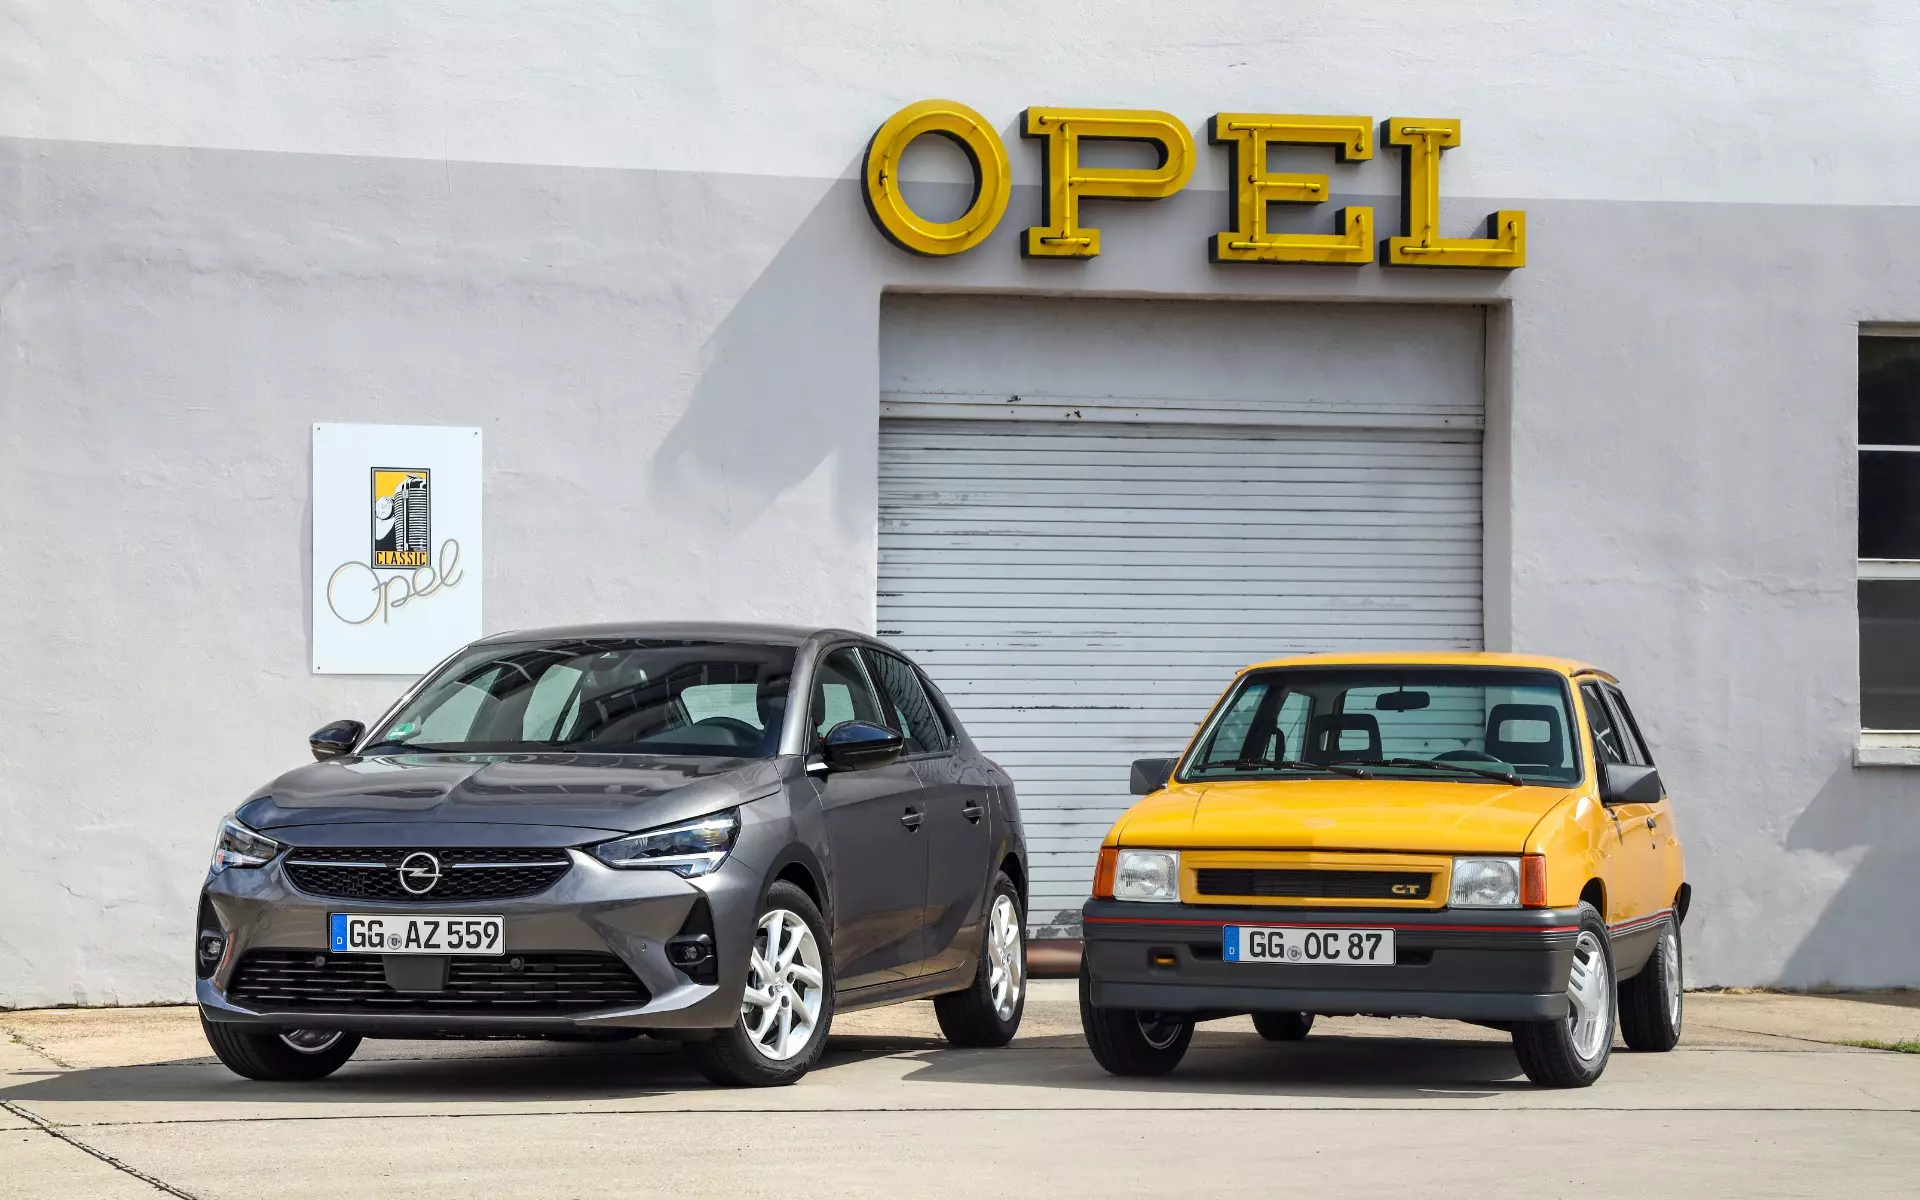 Opel Corsa GT del 87 descubierto en Oporto 7332_7